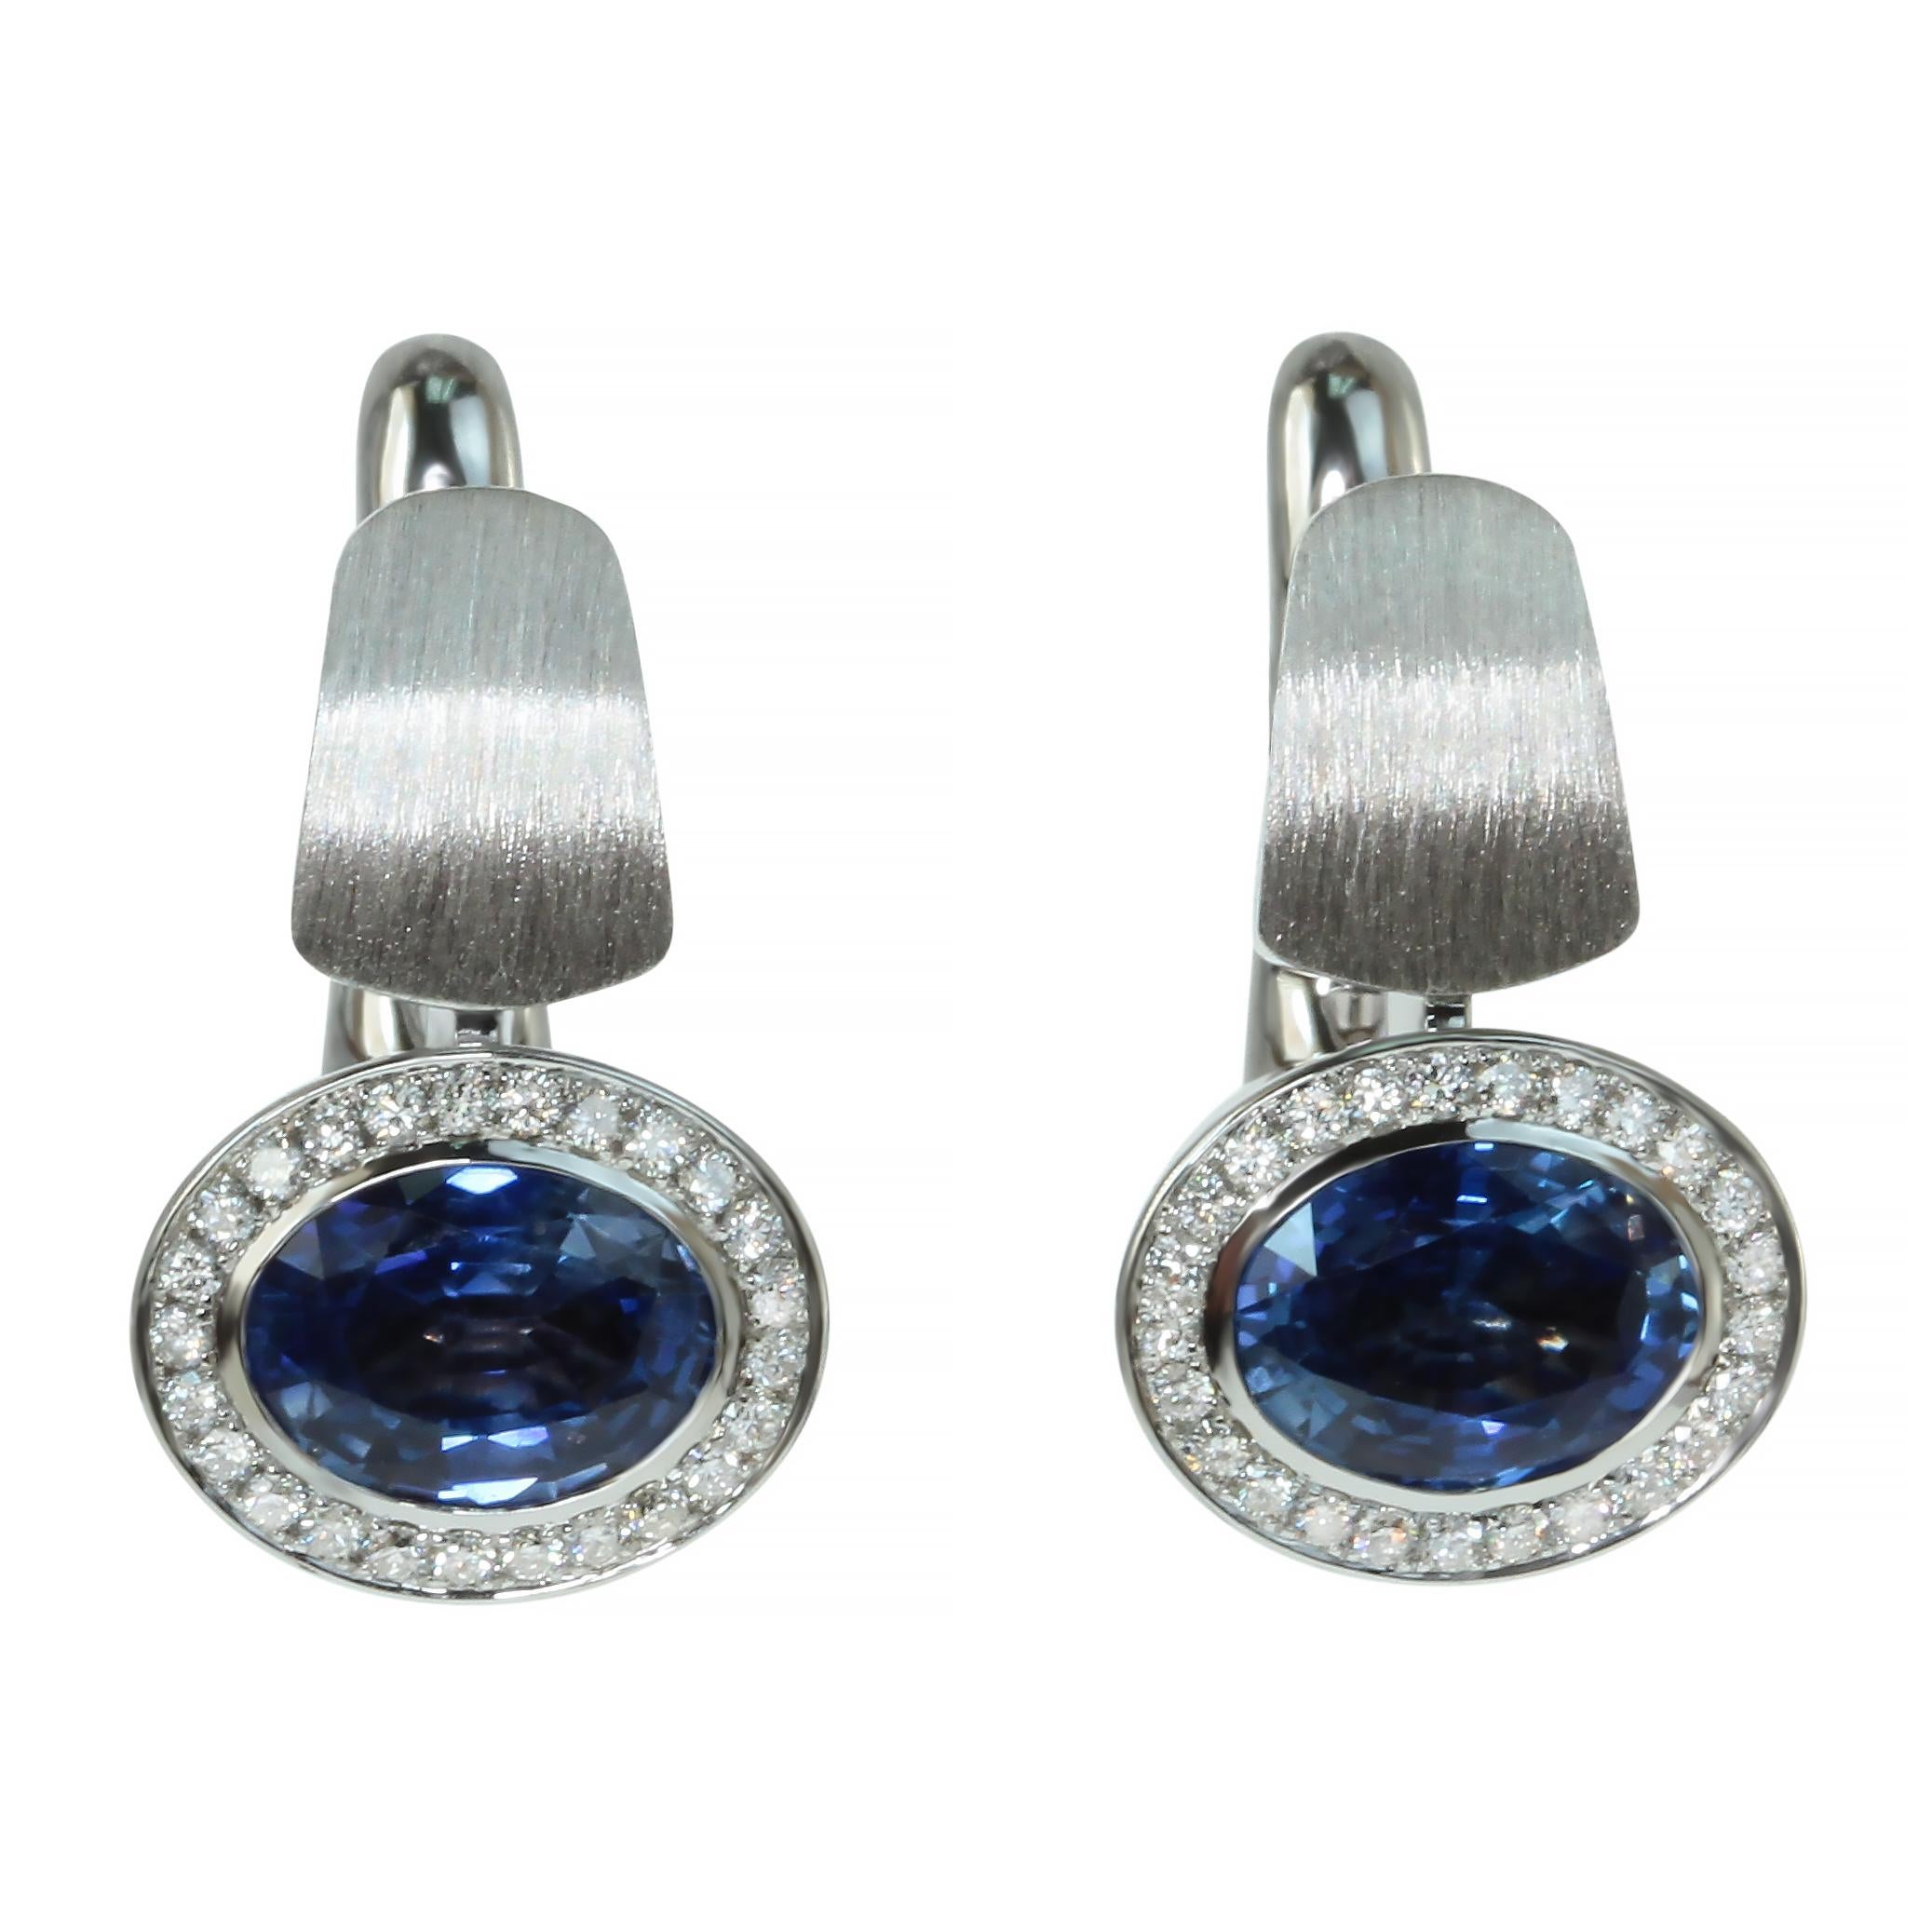 Blauer Saphir Diamanten Farbige Emaille 18 Karat Weißgold Kaleidoskop-Ohrringe

Werfen Sie einen Blick auf eine unserer Markentexturen in der Kaleidoscope Collection - 